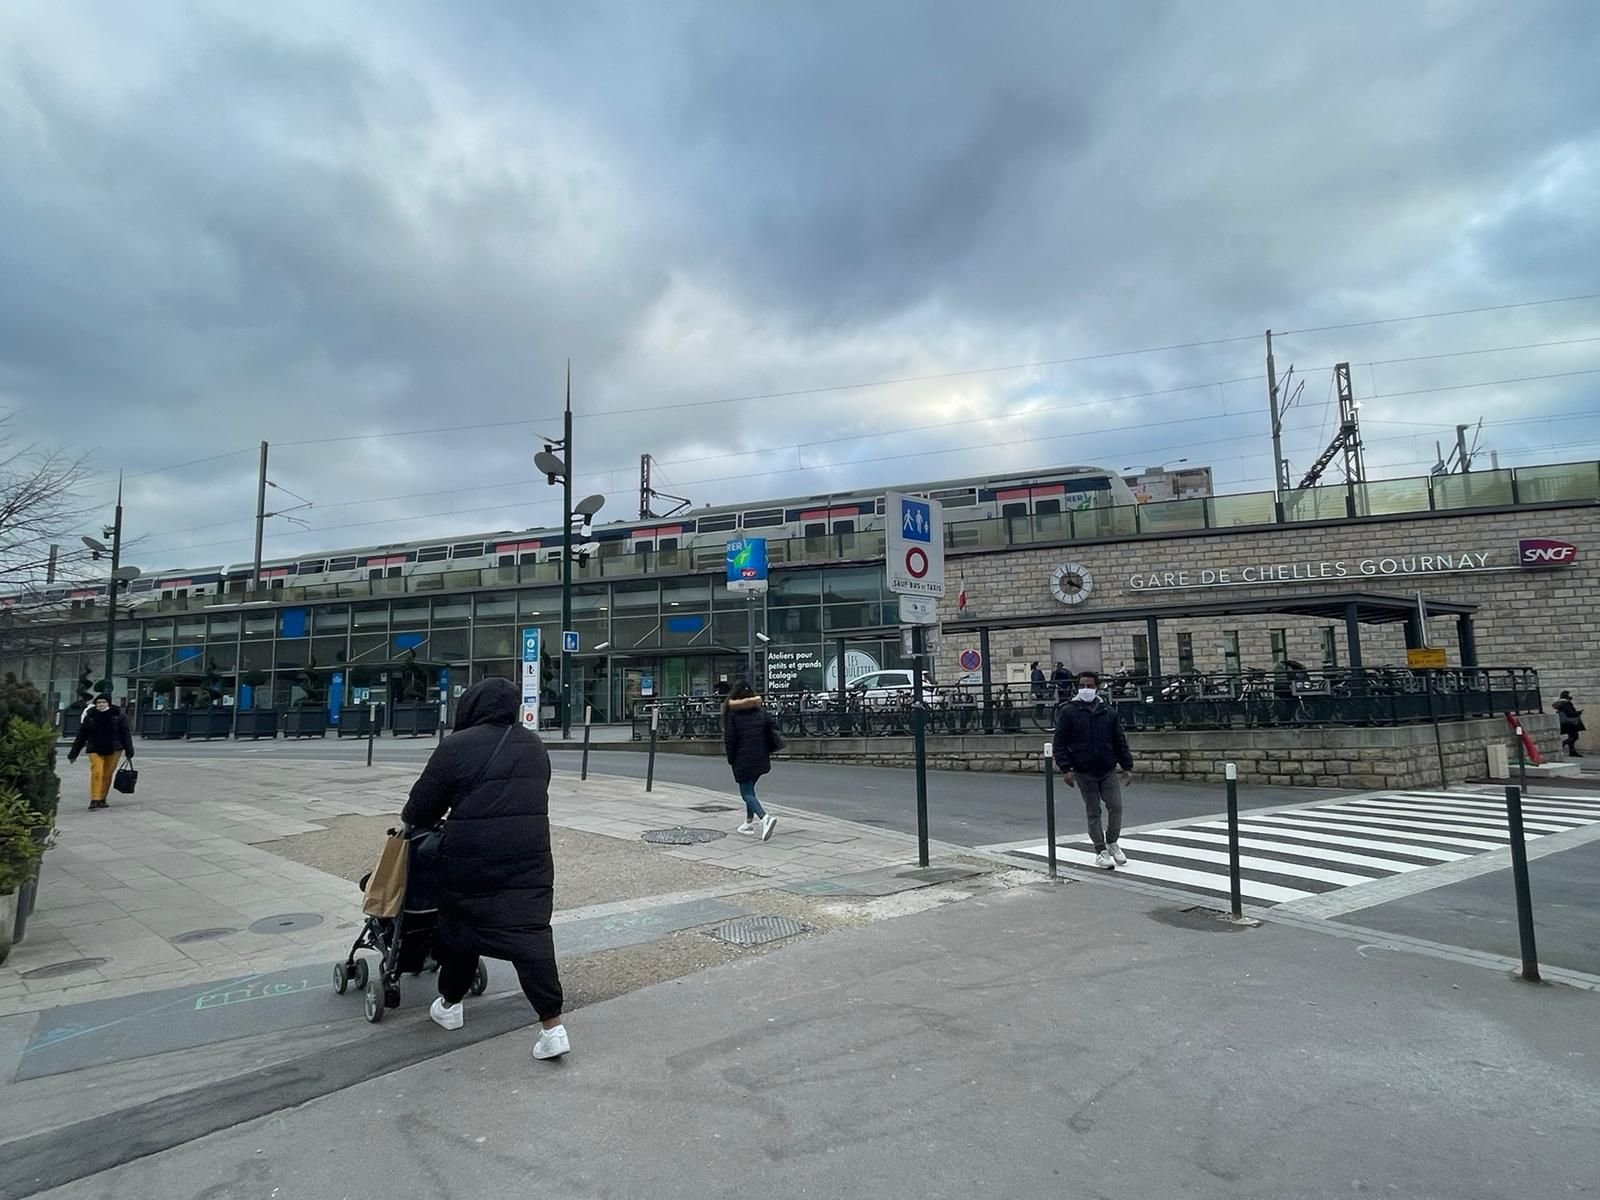 En permettant de rejoindre Paris en à peine un quart d'heure, la gare de Chelles facilite l'alternance entre présentiel et distanciel pour les travailleurs. LP/Timothée Talbi